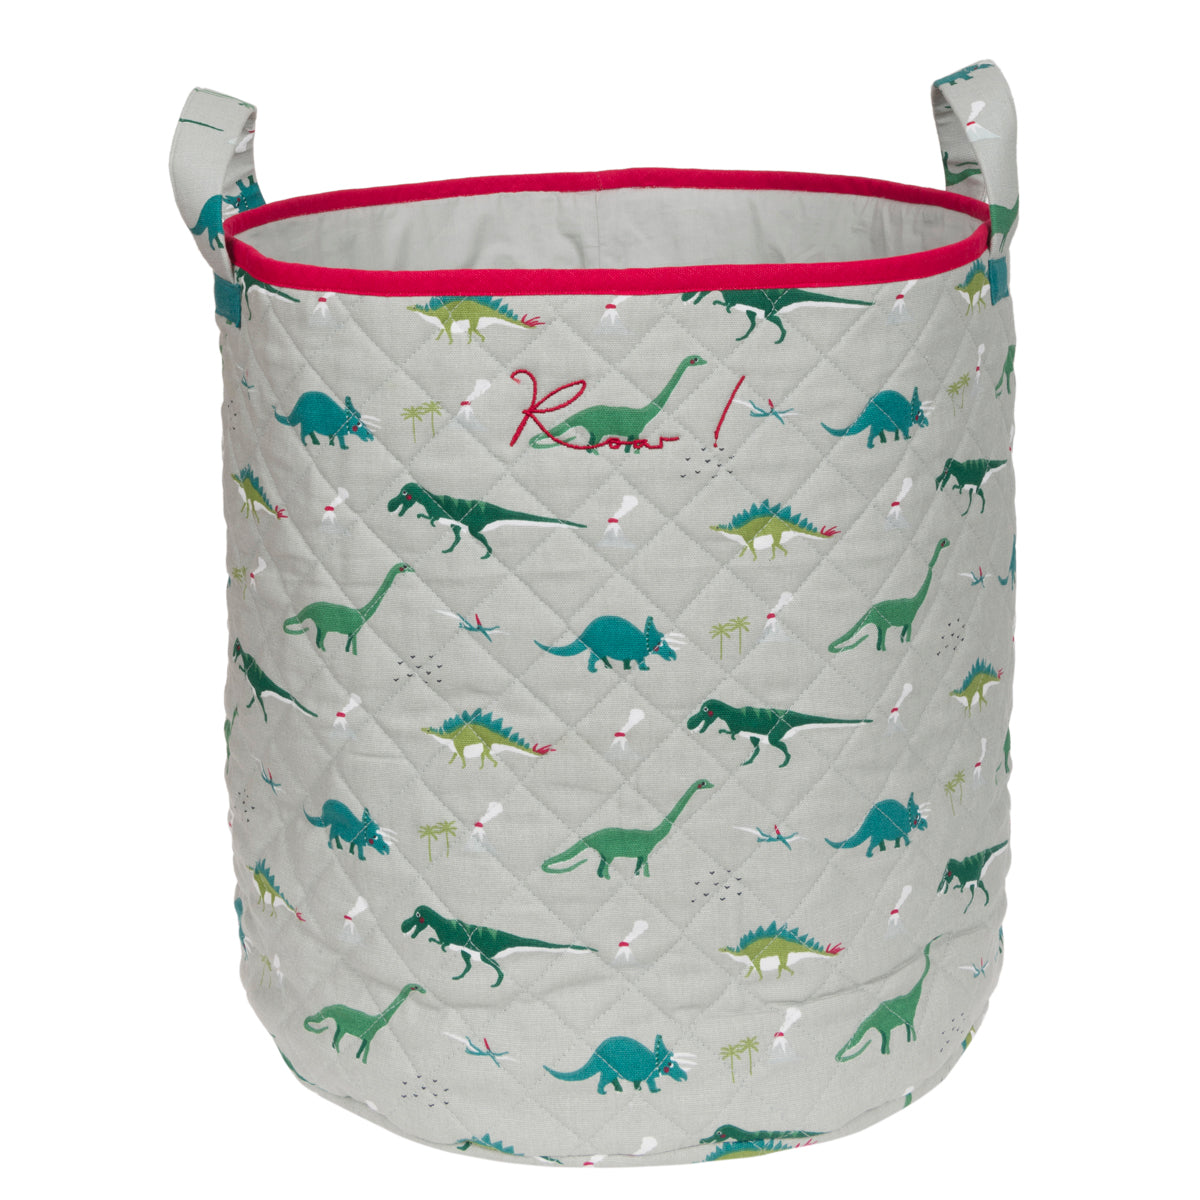 Dinosaur Storage Basket by Sophie Allport